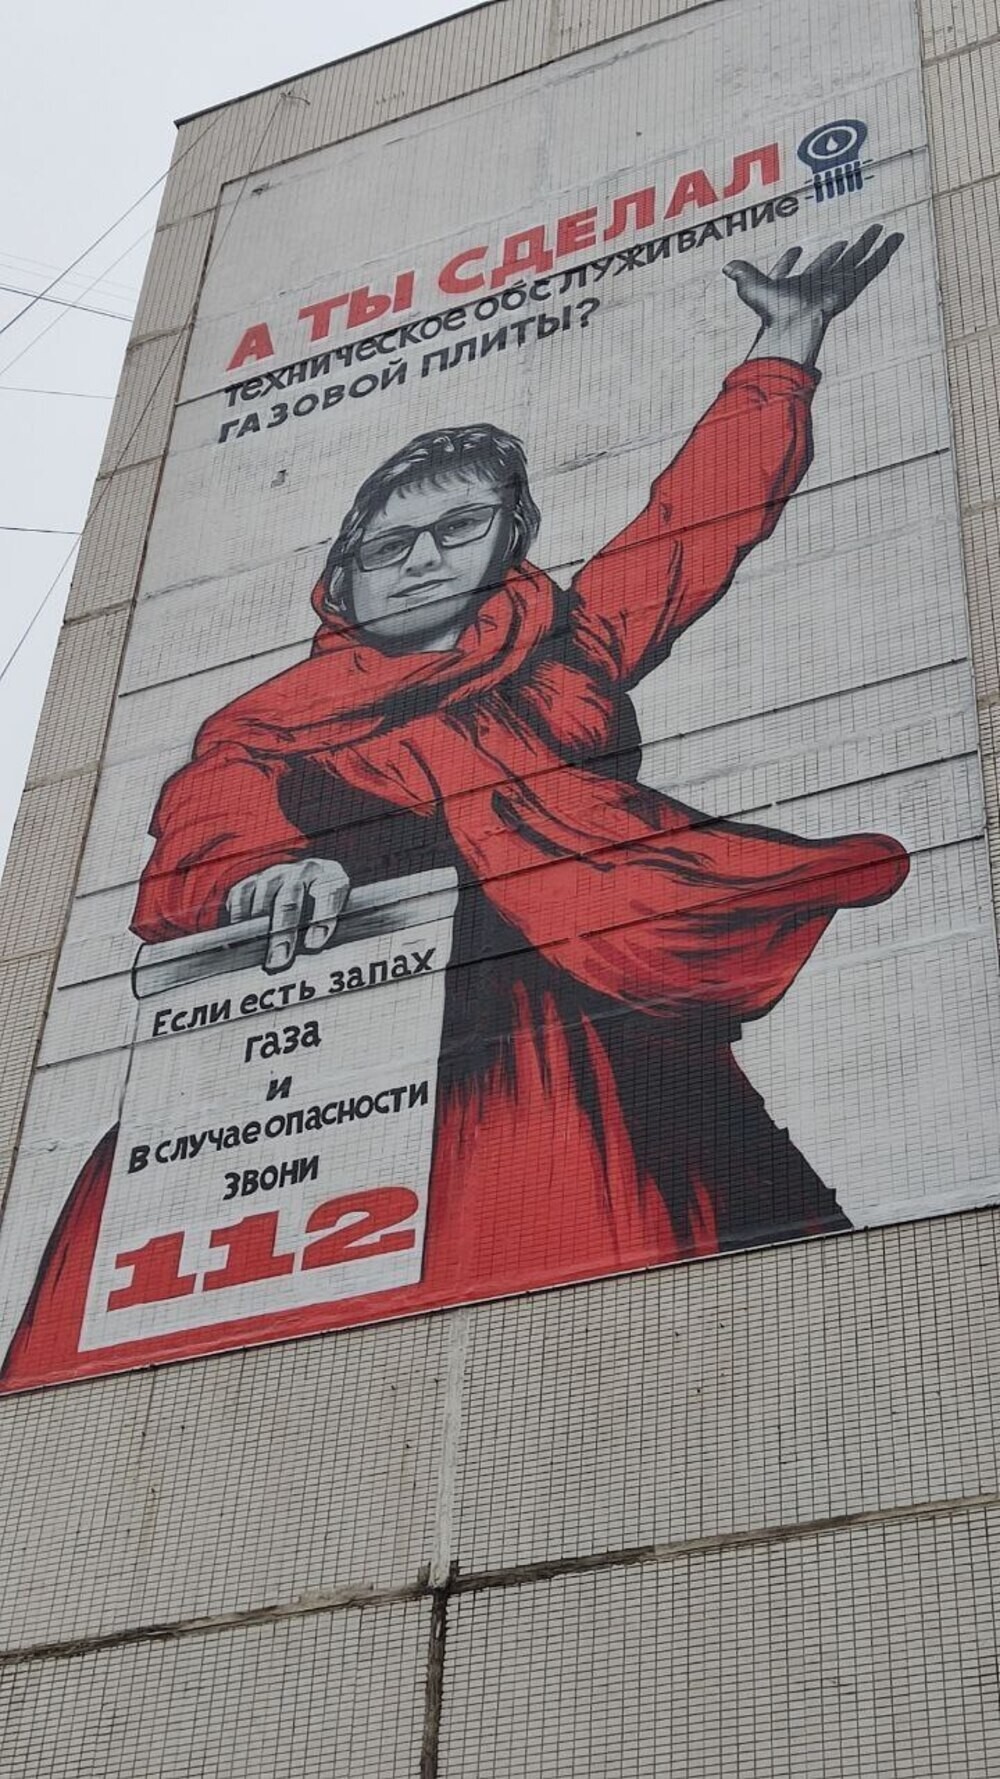 Жители Видного пожаловались на плакат с лицом местной чиновницы в образе Родины-матери